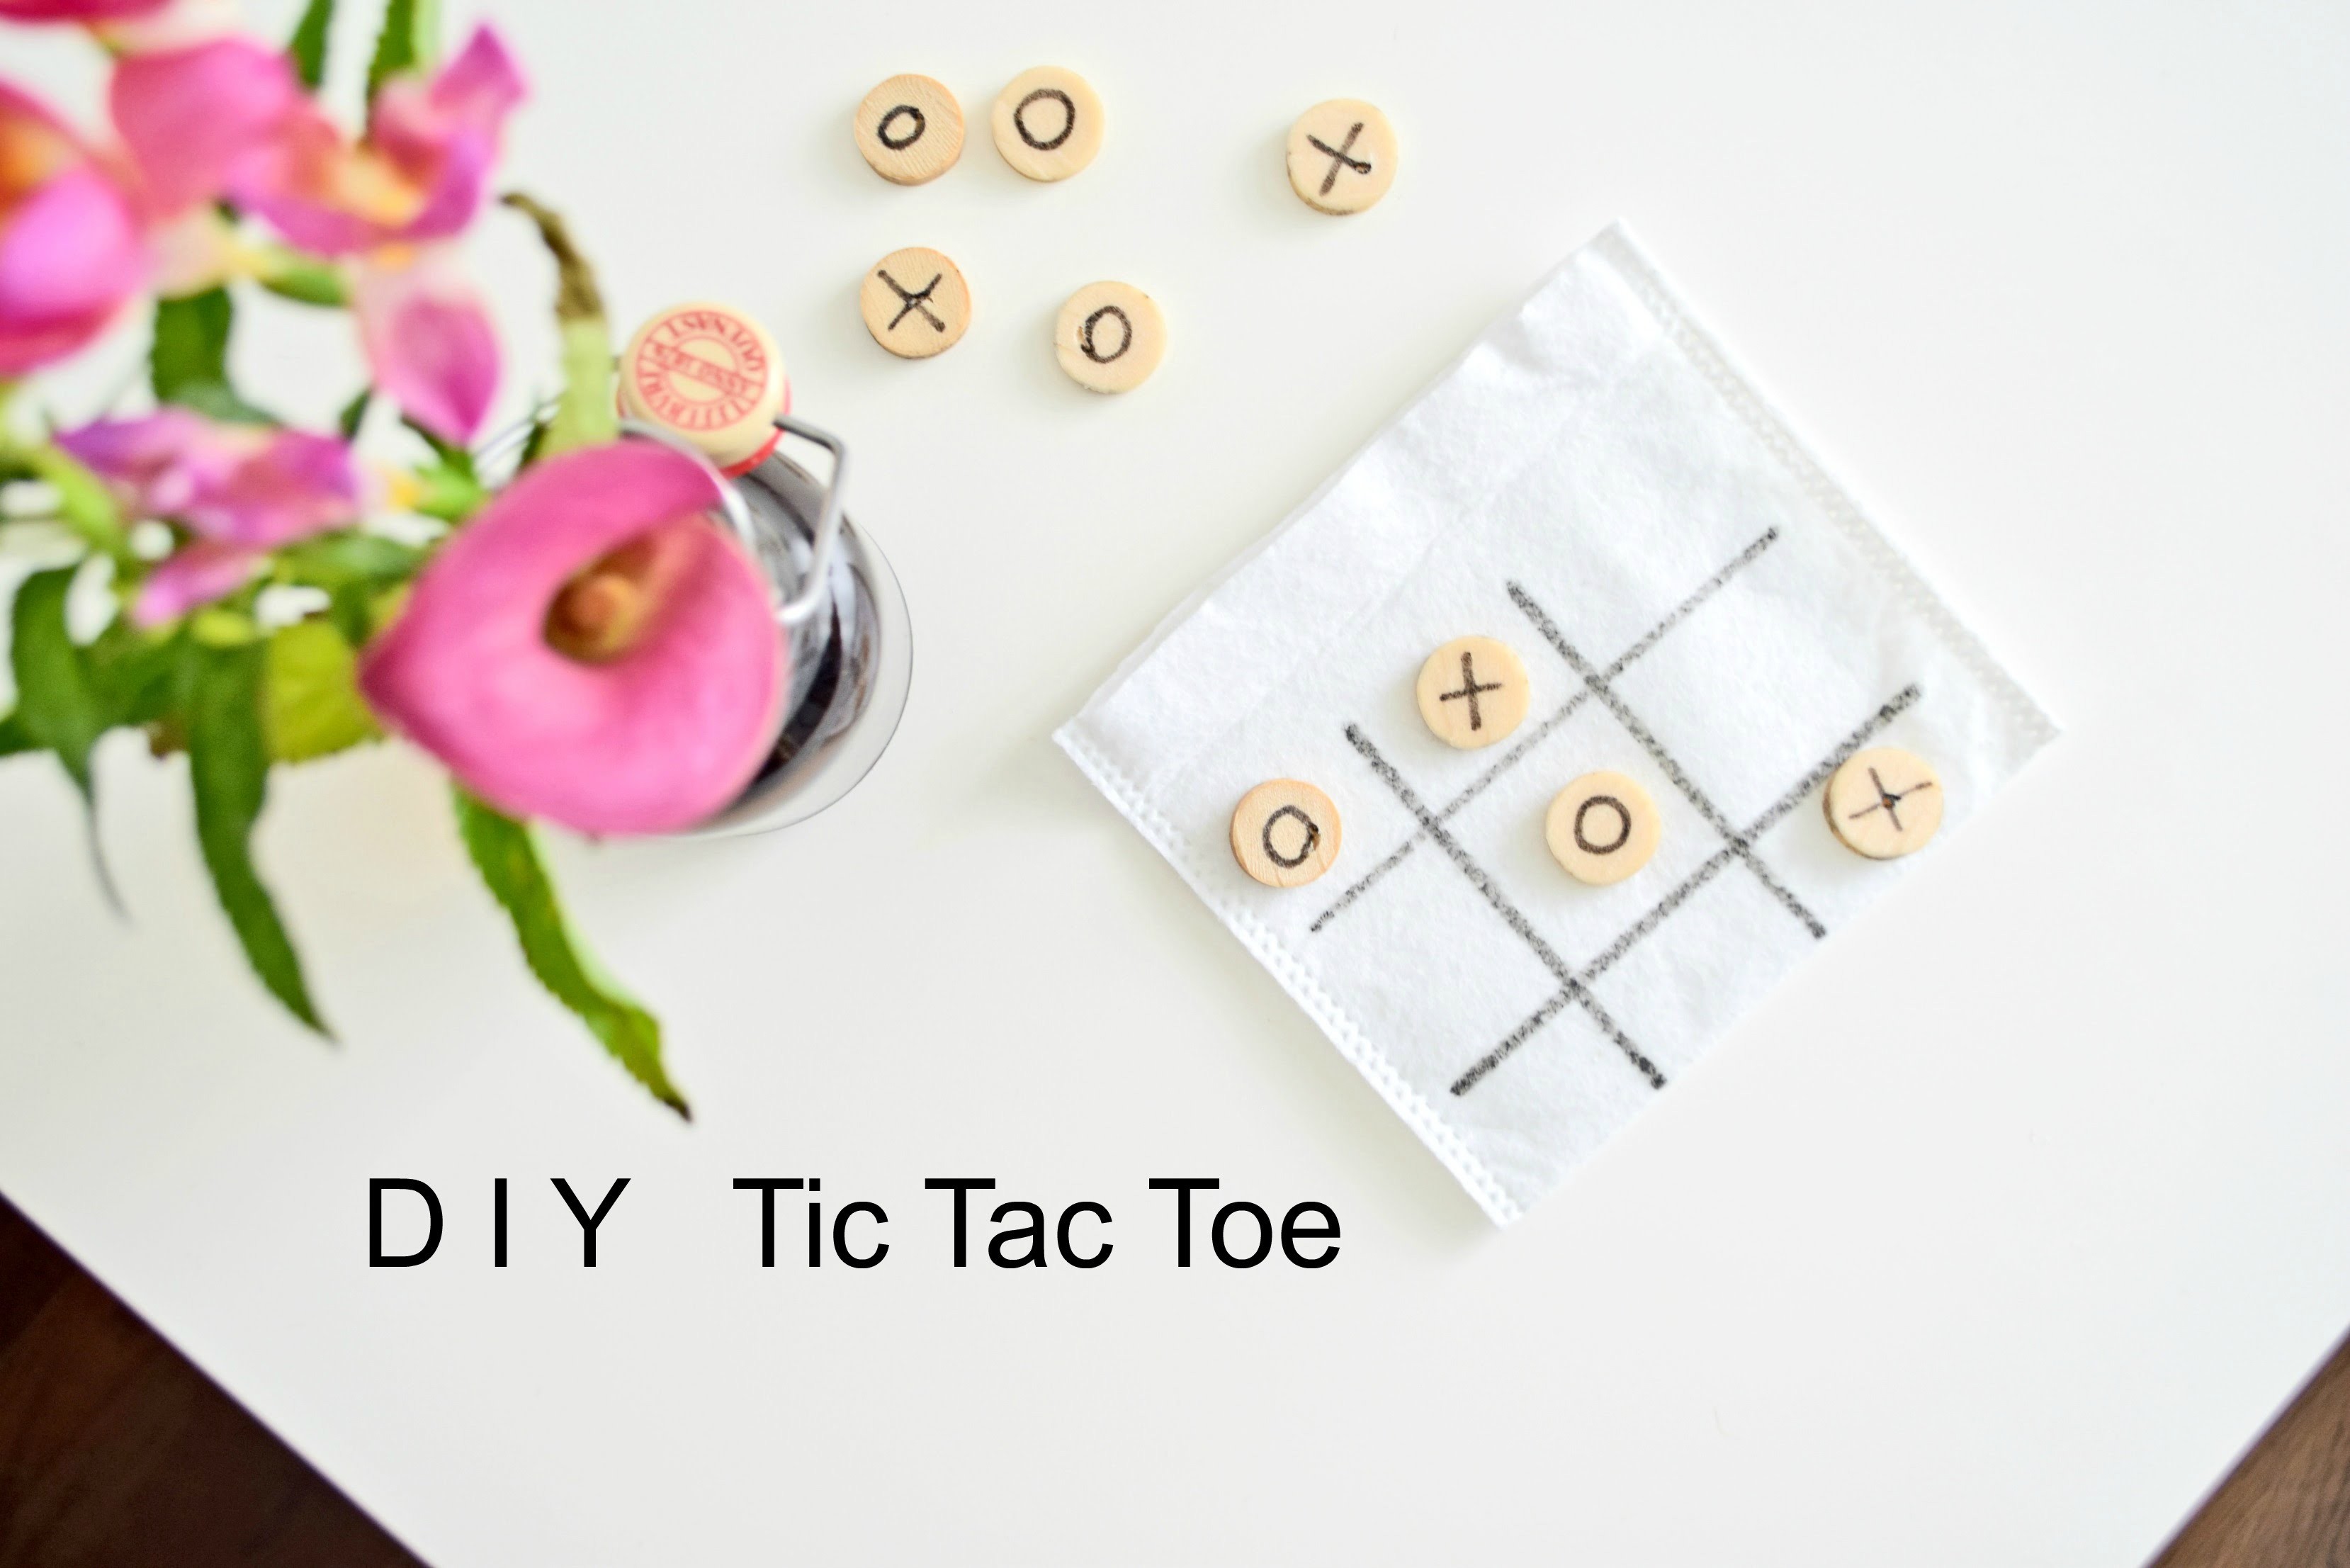 DIY Tic Tac Toe | Pomysł diy na grę dla dziecka! Cleo-inspire